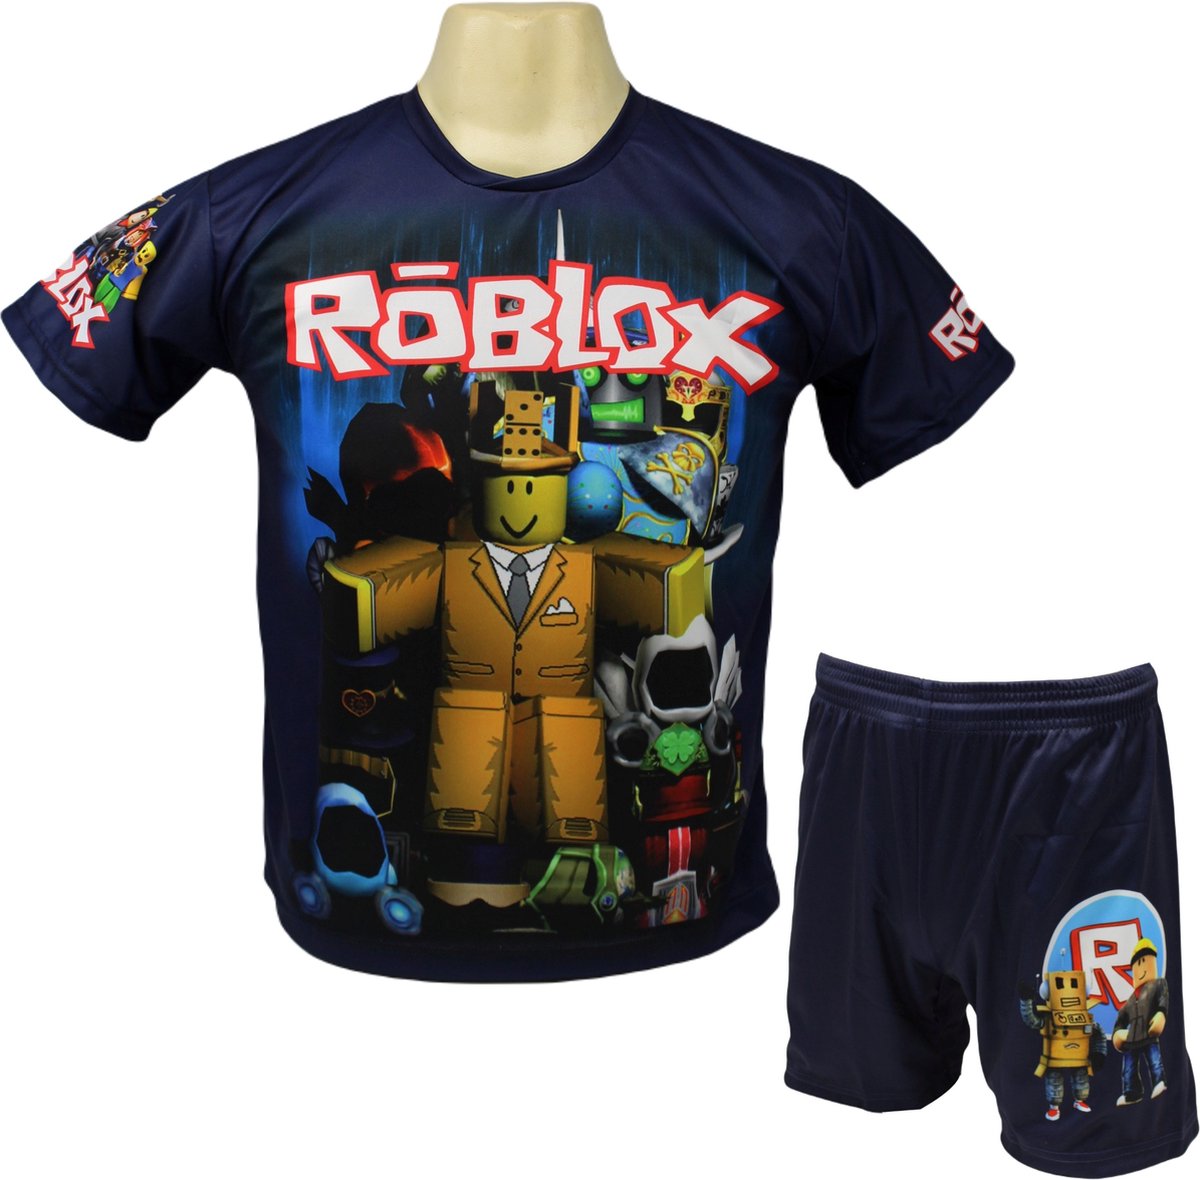 Roblox Shirt en Broekje - Roblox Kleding Tenue - Kinder tot Volwassen maten - Maat 152